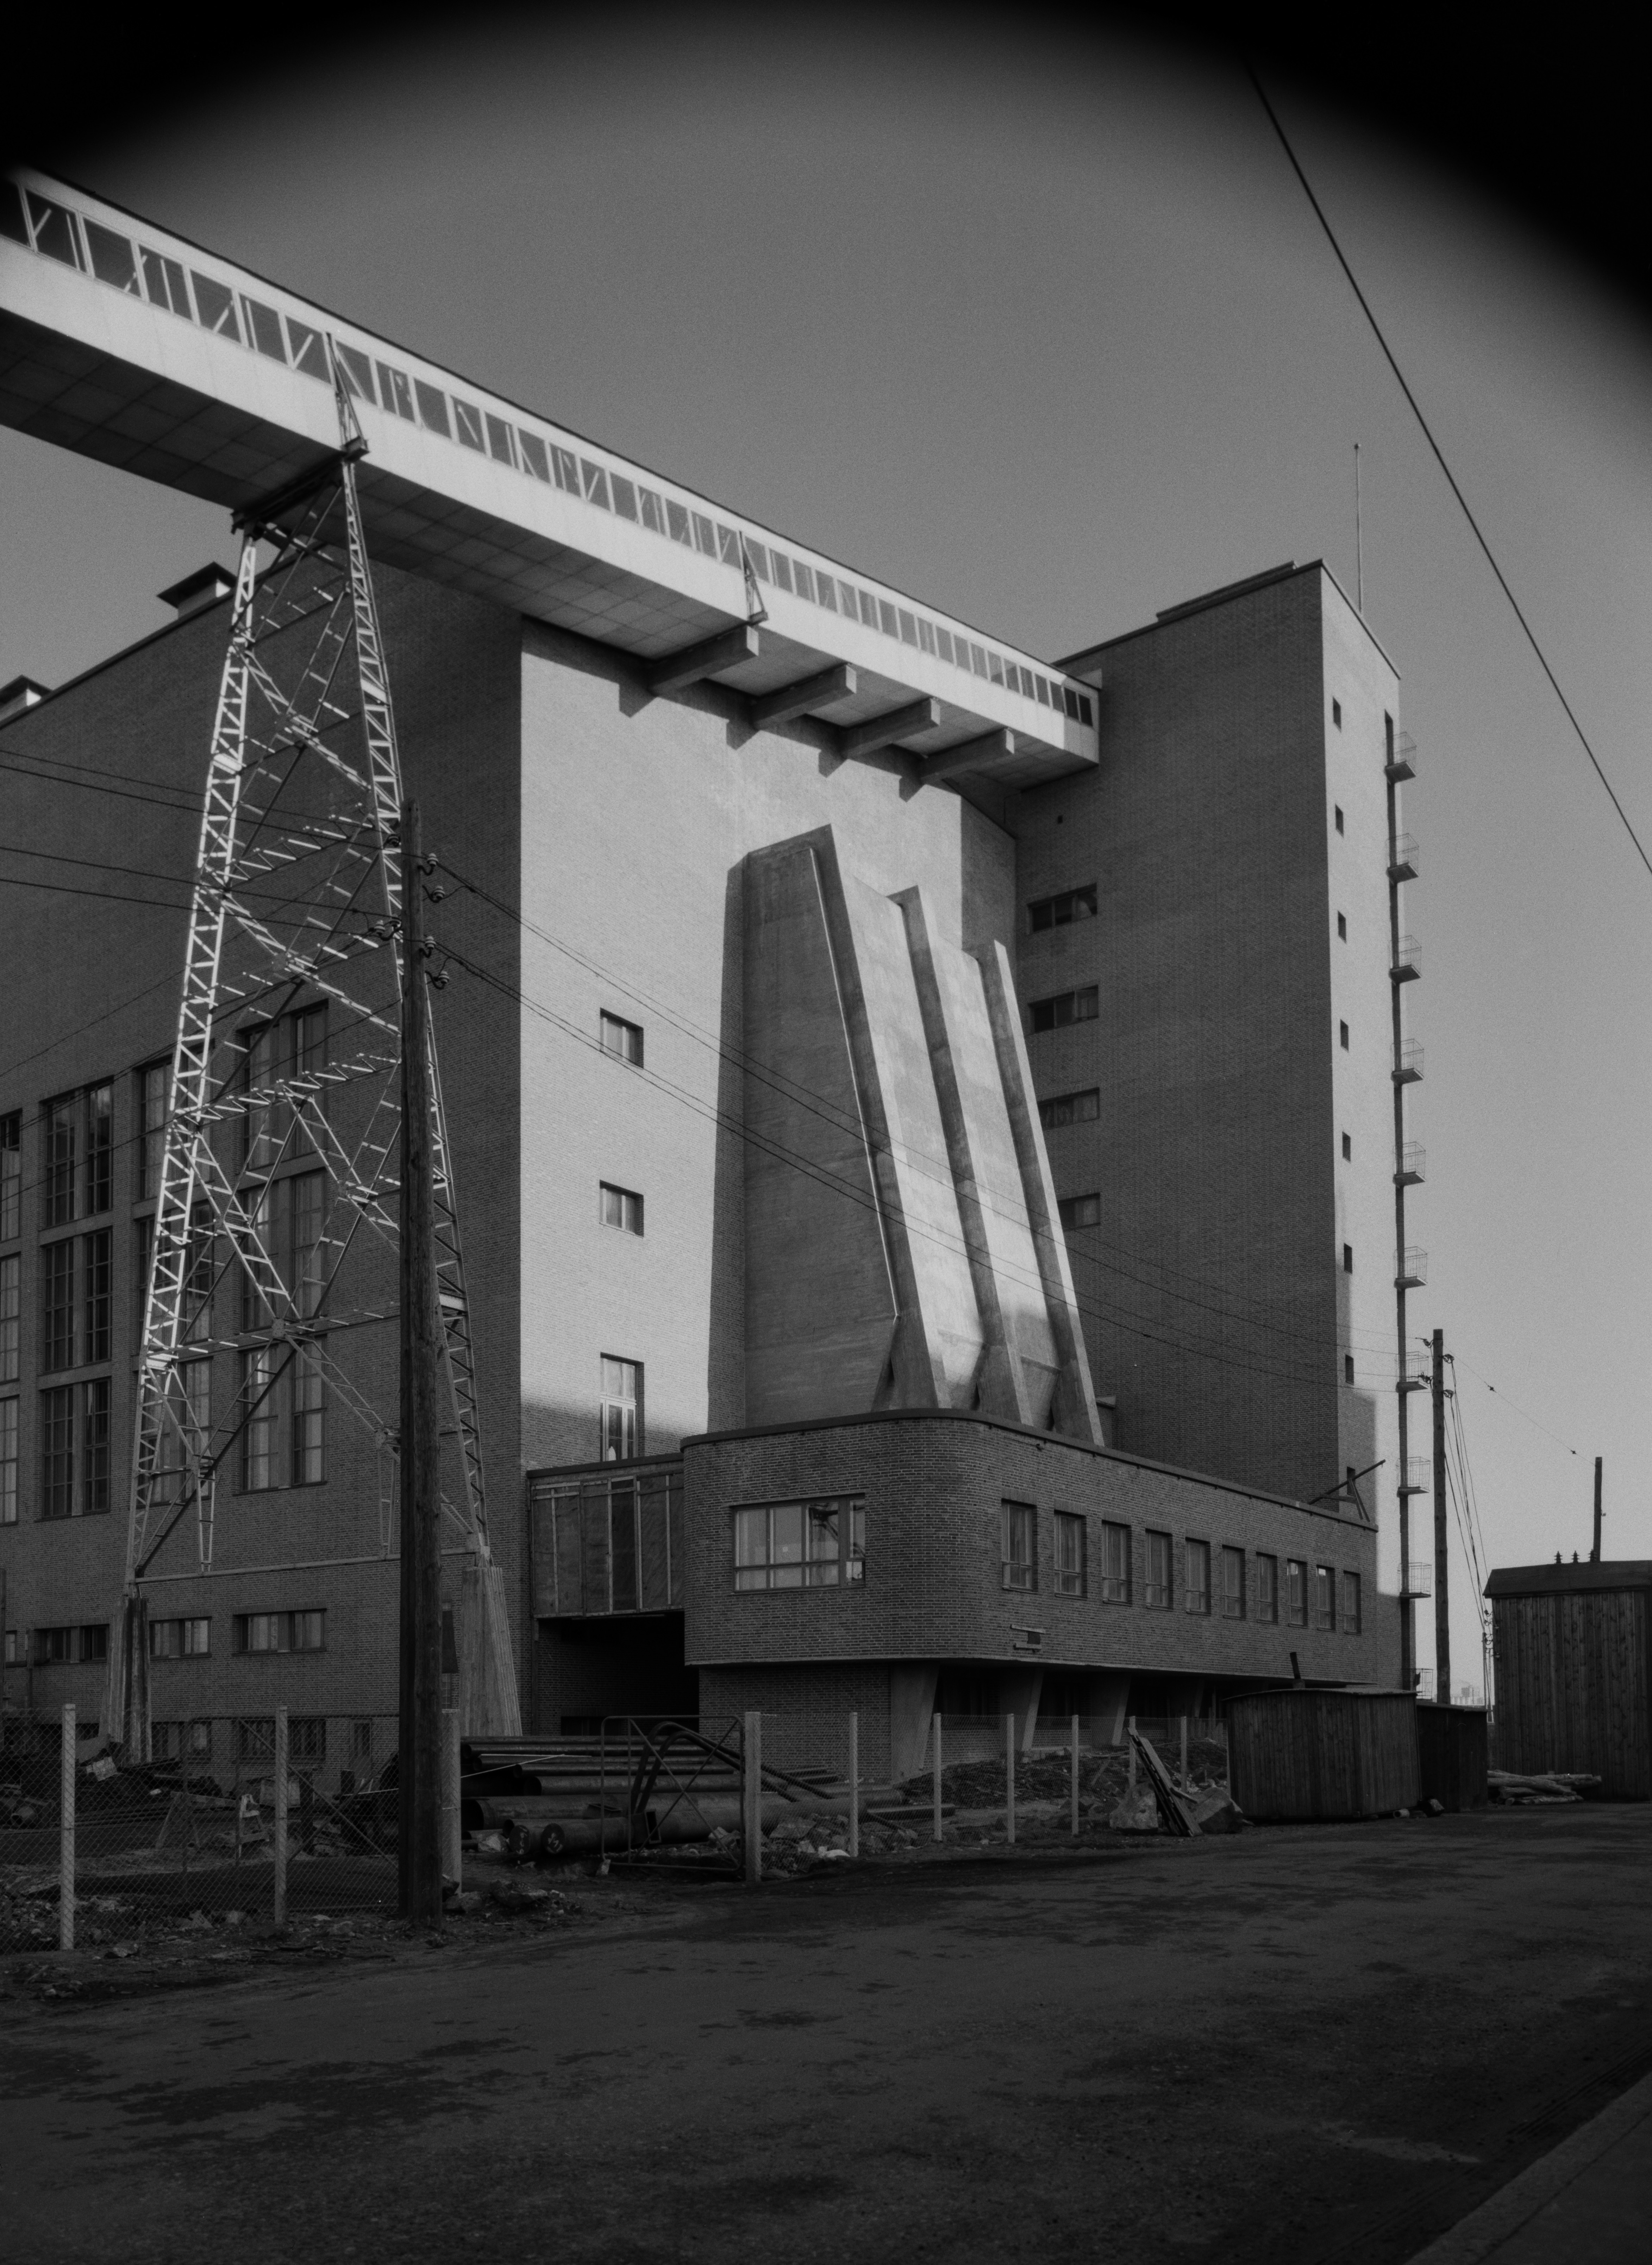 Helsingin sähkölaitoksen Salmisaaren voimala, Lauttasaarenkatu 11 (nyk. Porkkalankatu 9-11), nähtynä Tallberginkaun toiselta puolen, Porkkalankadun pohjoispuolelta. Rakennuksen yläkertaan nousee hiiltä voimalan polttoaineeksi kuljettava linjasto. Voimala A:n suunnitteli arkkitehti Vera Rosendal kaupunginarkkitehti Hilding Ekelundin johdolla, ja se otettiin käyttöön vuonna 1953. Valokuvan yläyläosassa näkyy kaareutuva tumma varjo, joka johtuu siitä, että valokuvaaja on käyttänyt kuvatessaan vastavalosuojaa.